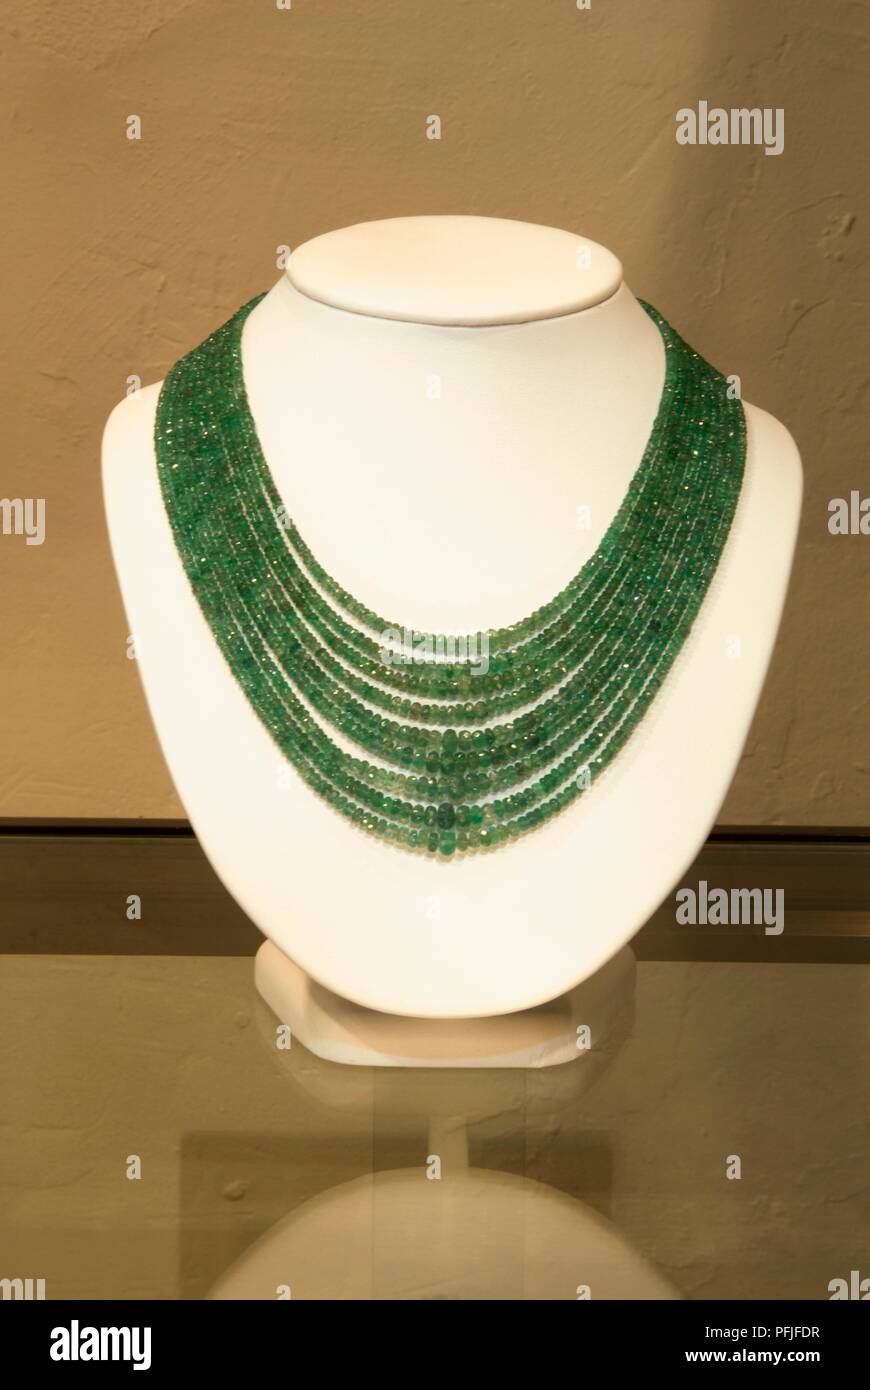 Puerto Rico, Smeraldo Colombiano collana in gioielleria Foto Stock